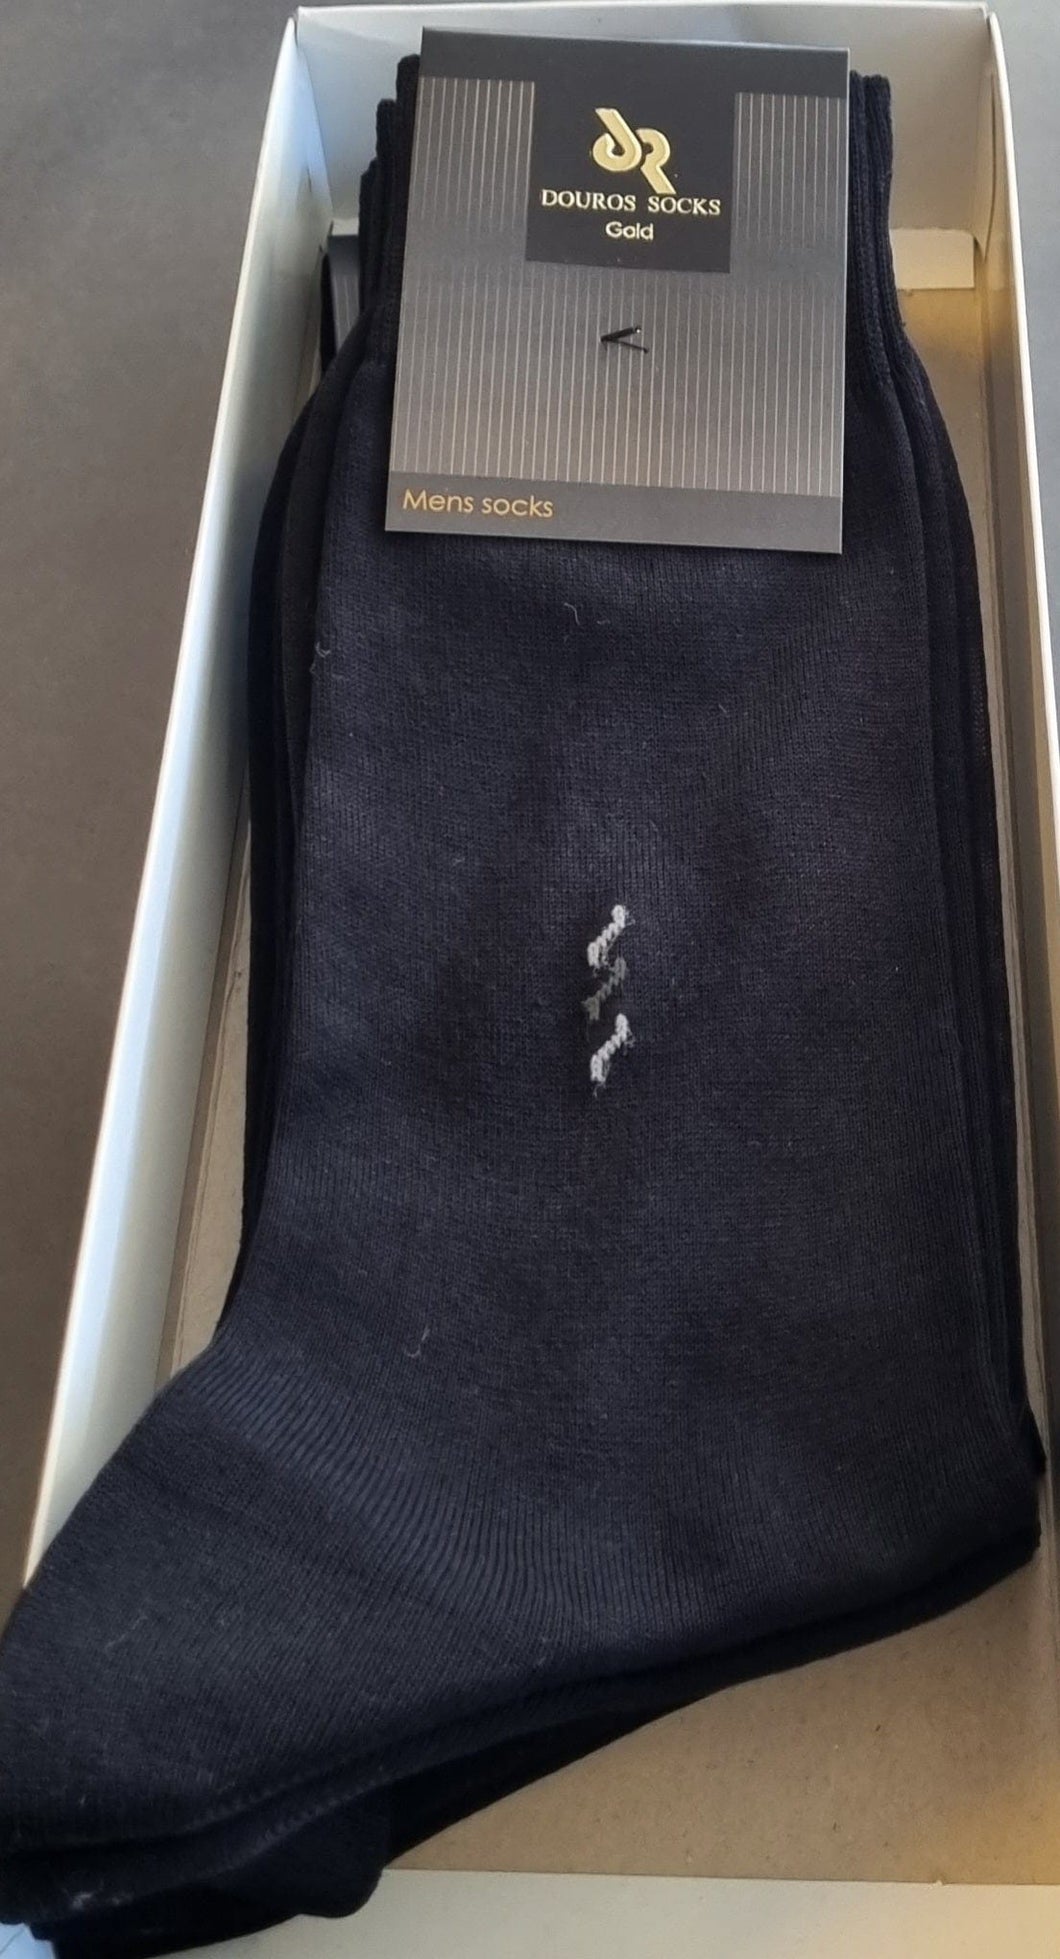 Ανδρική Βαμβακερή Μερσεριζέ Κάλτσα Douros 545 Μαύρο | evaunderwear